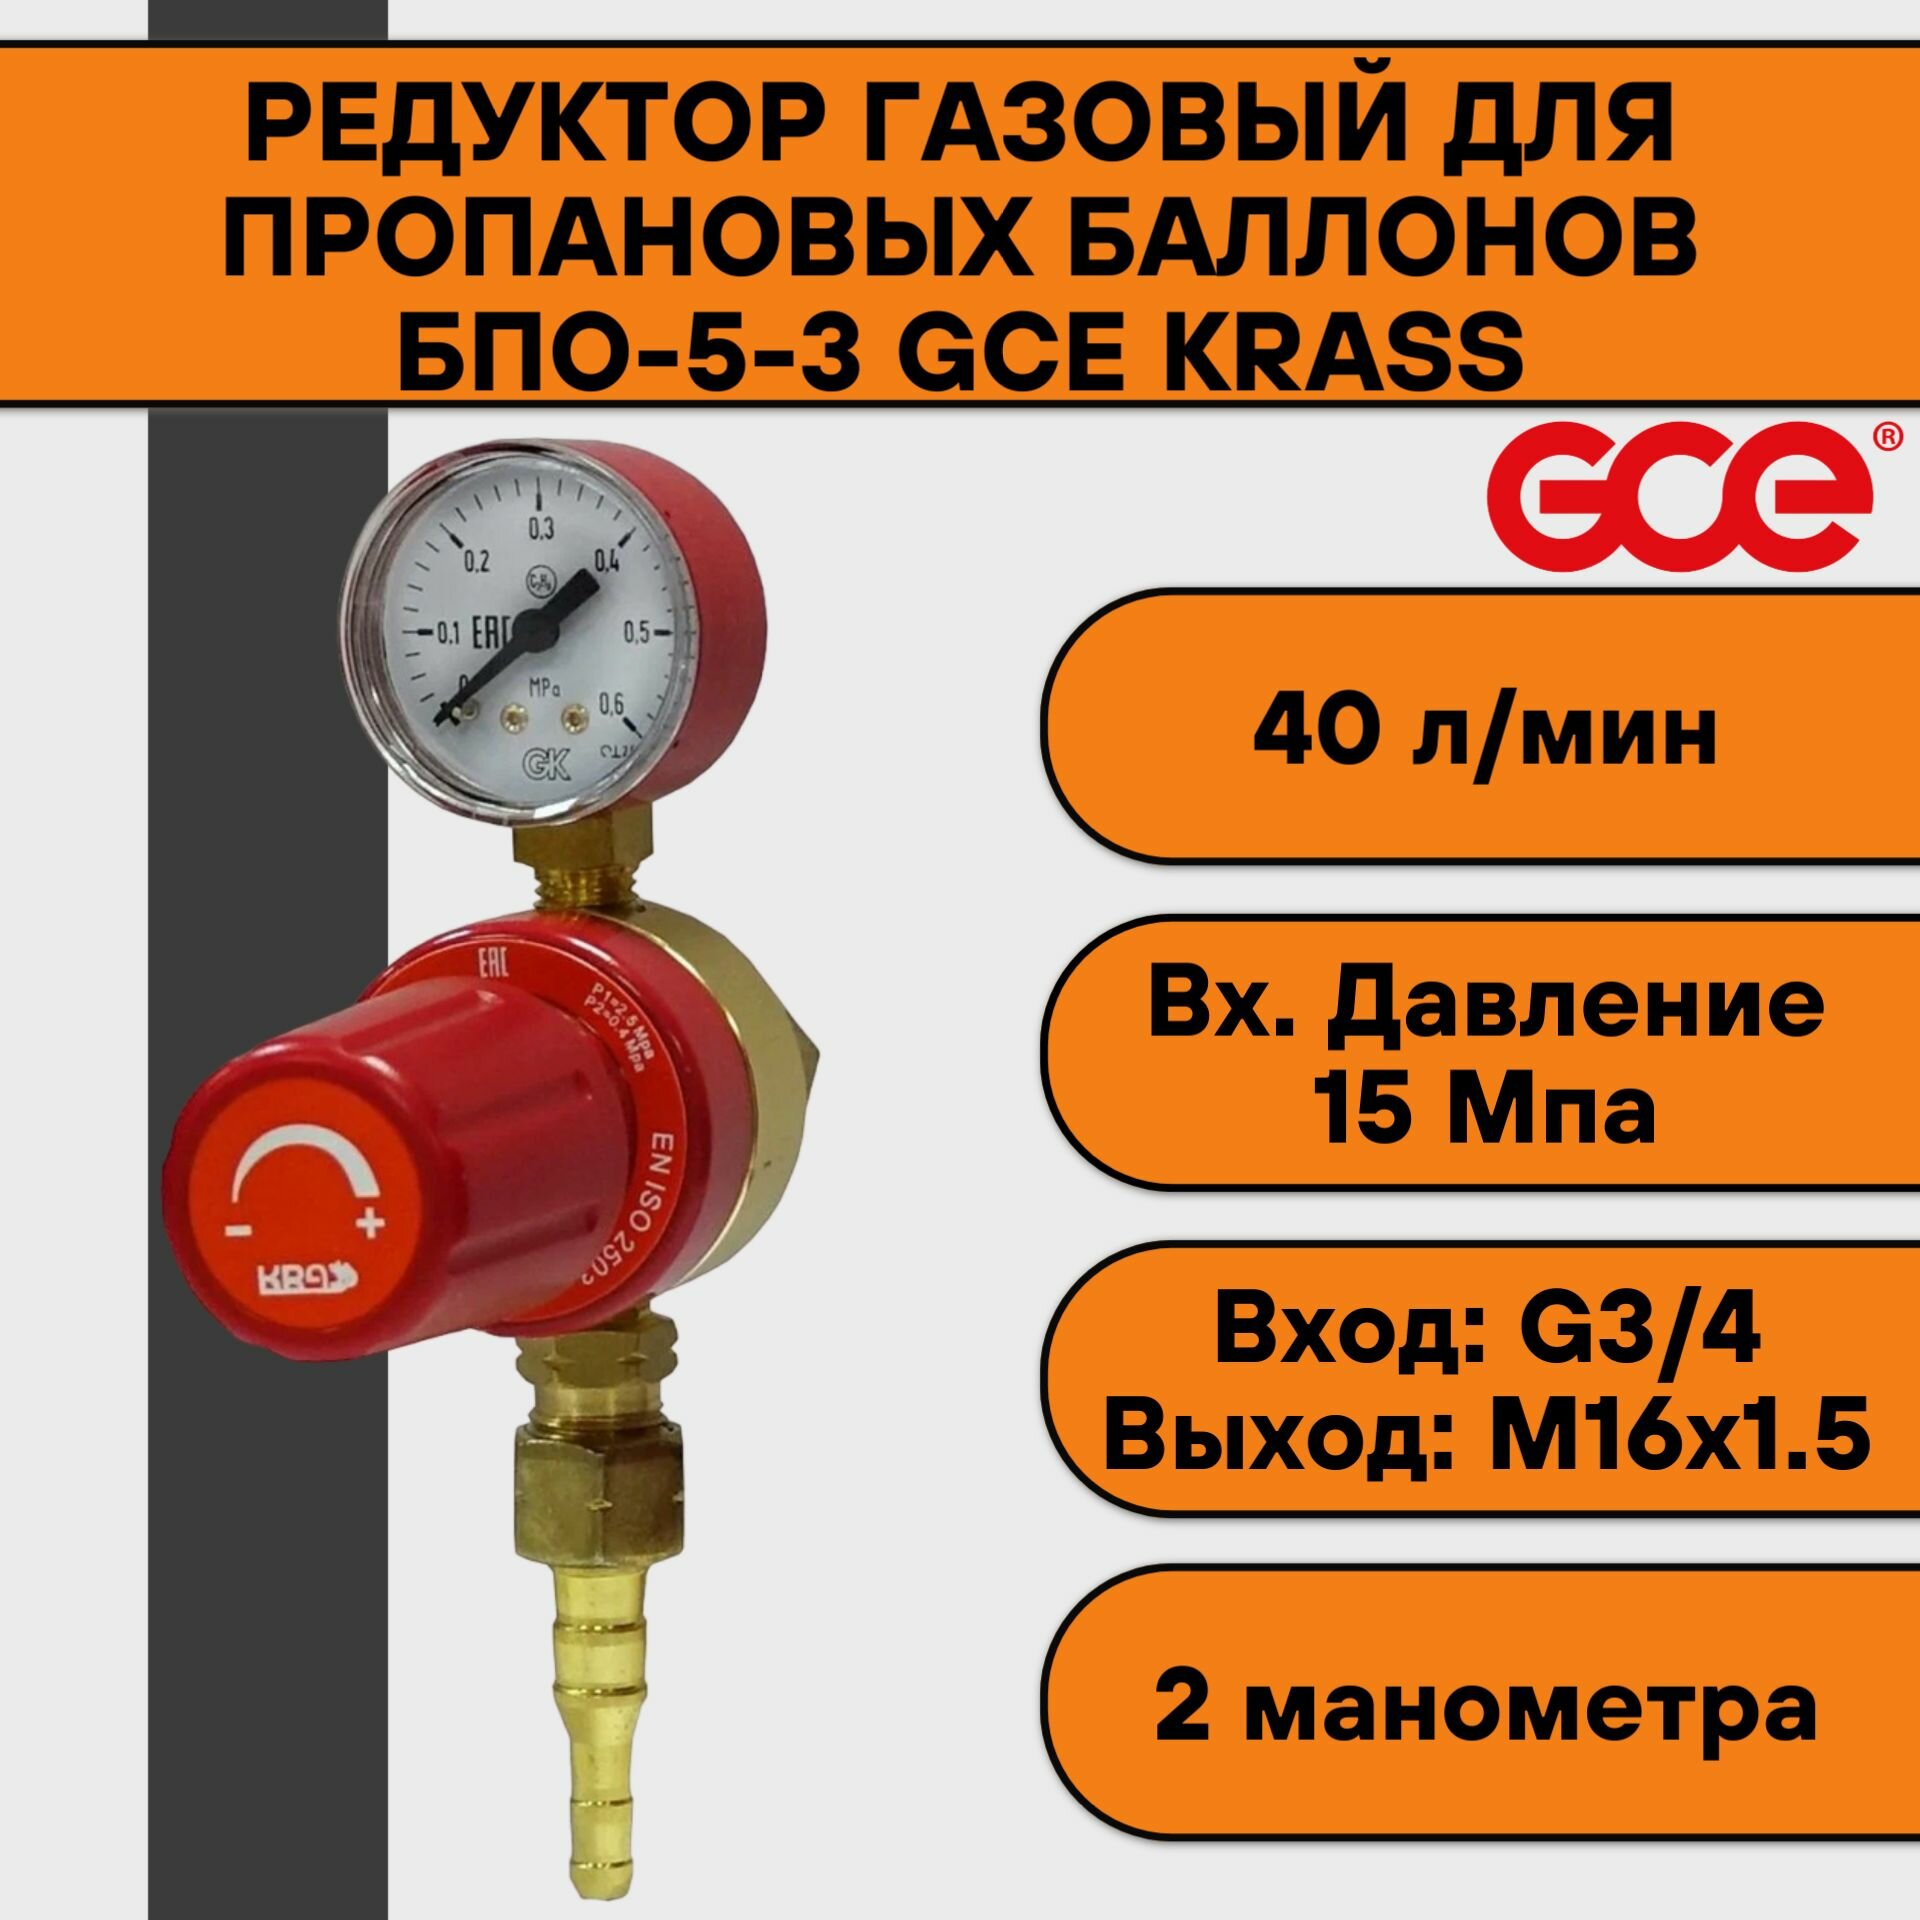 Редуктор газовый для пропановых баллонов БПО-5-3 GCE KRASS